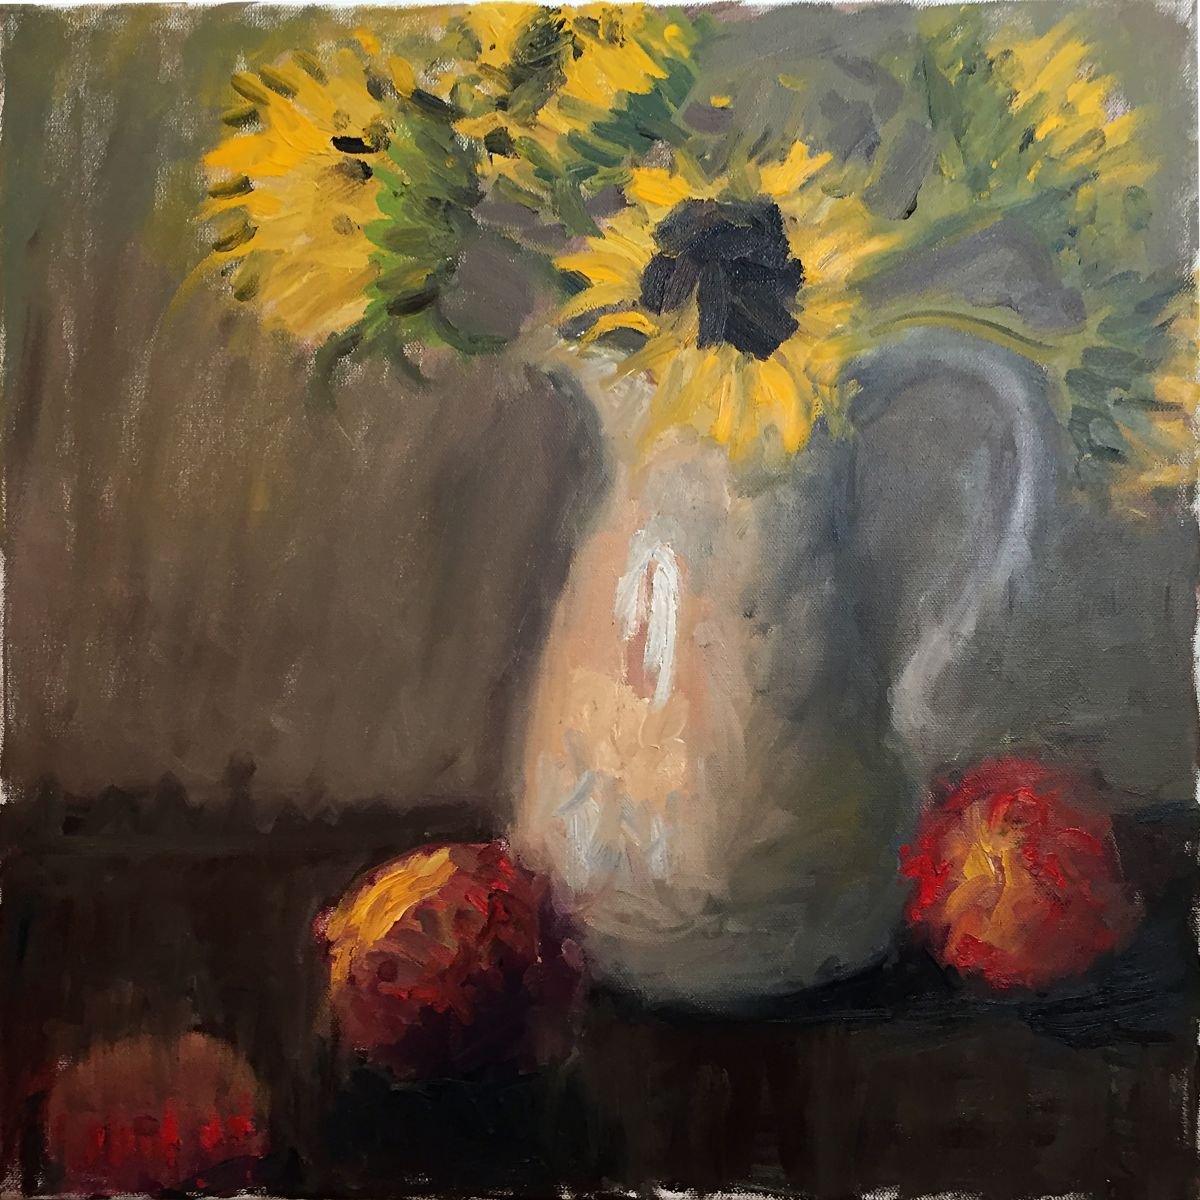 Sunflowers II by Zeke Garcia